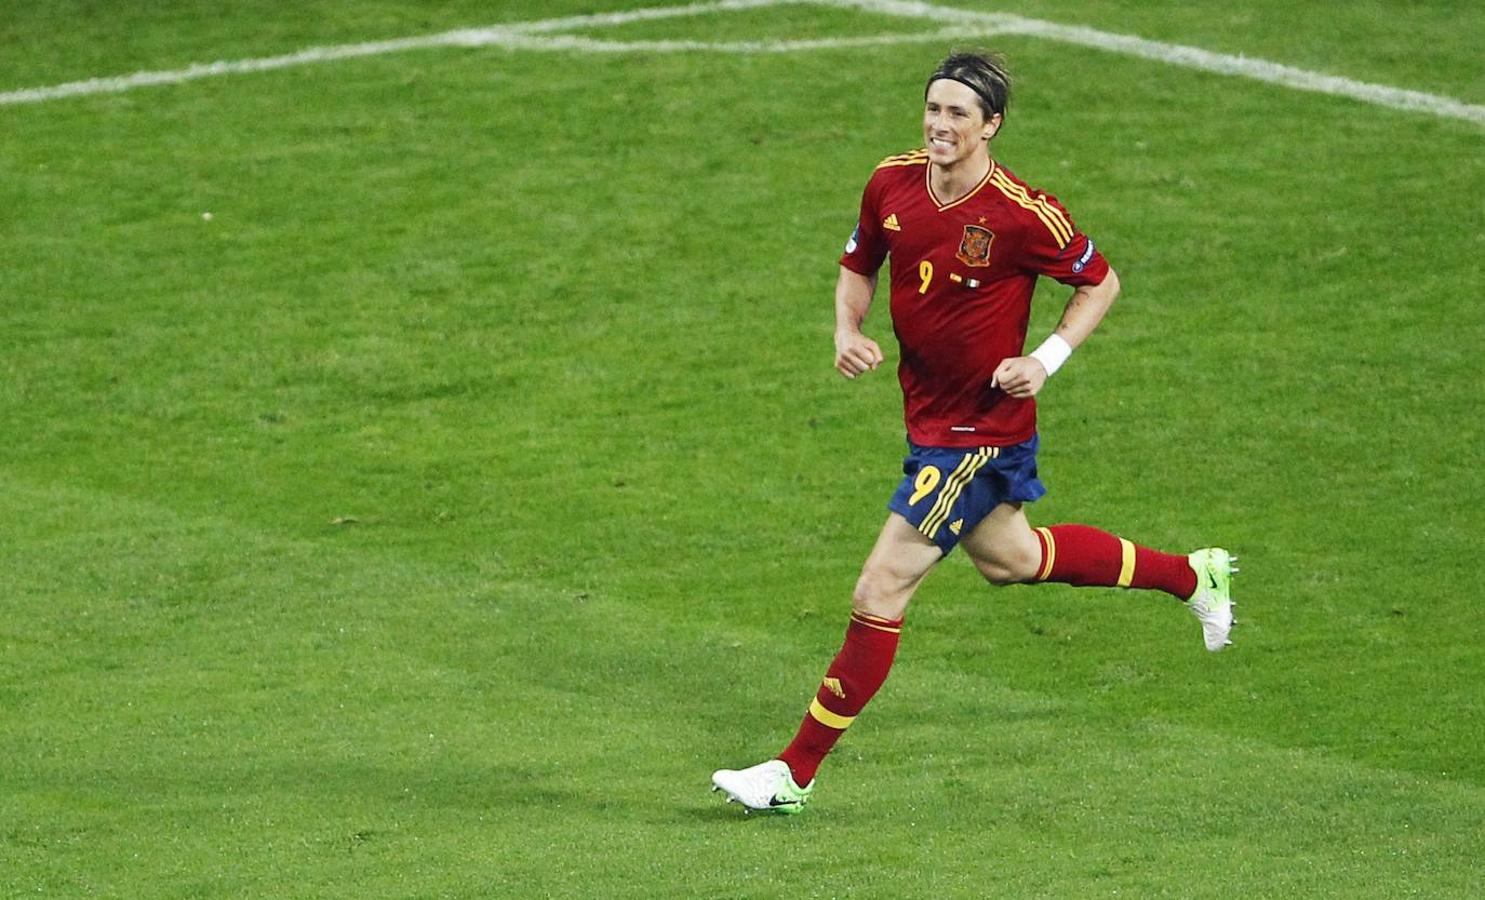 Cuatro años después de hacerlo contra Alemania, Torres volvió a marcar en una final de la Eurocopa. Esta vez ante Italia. 